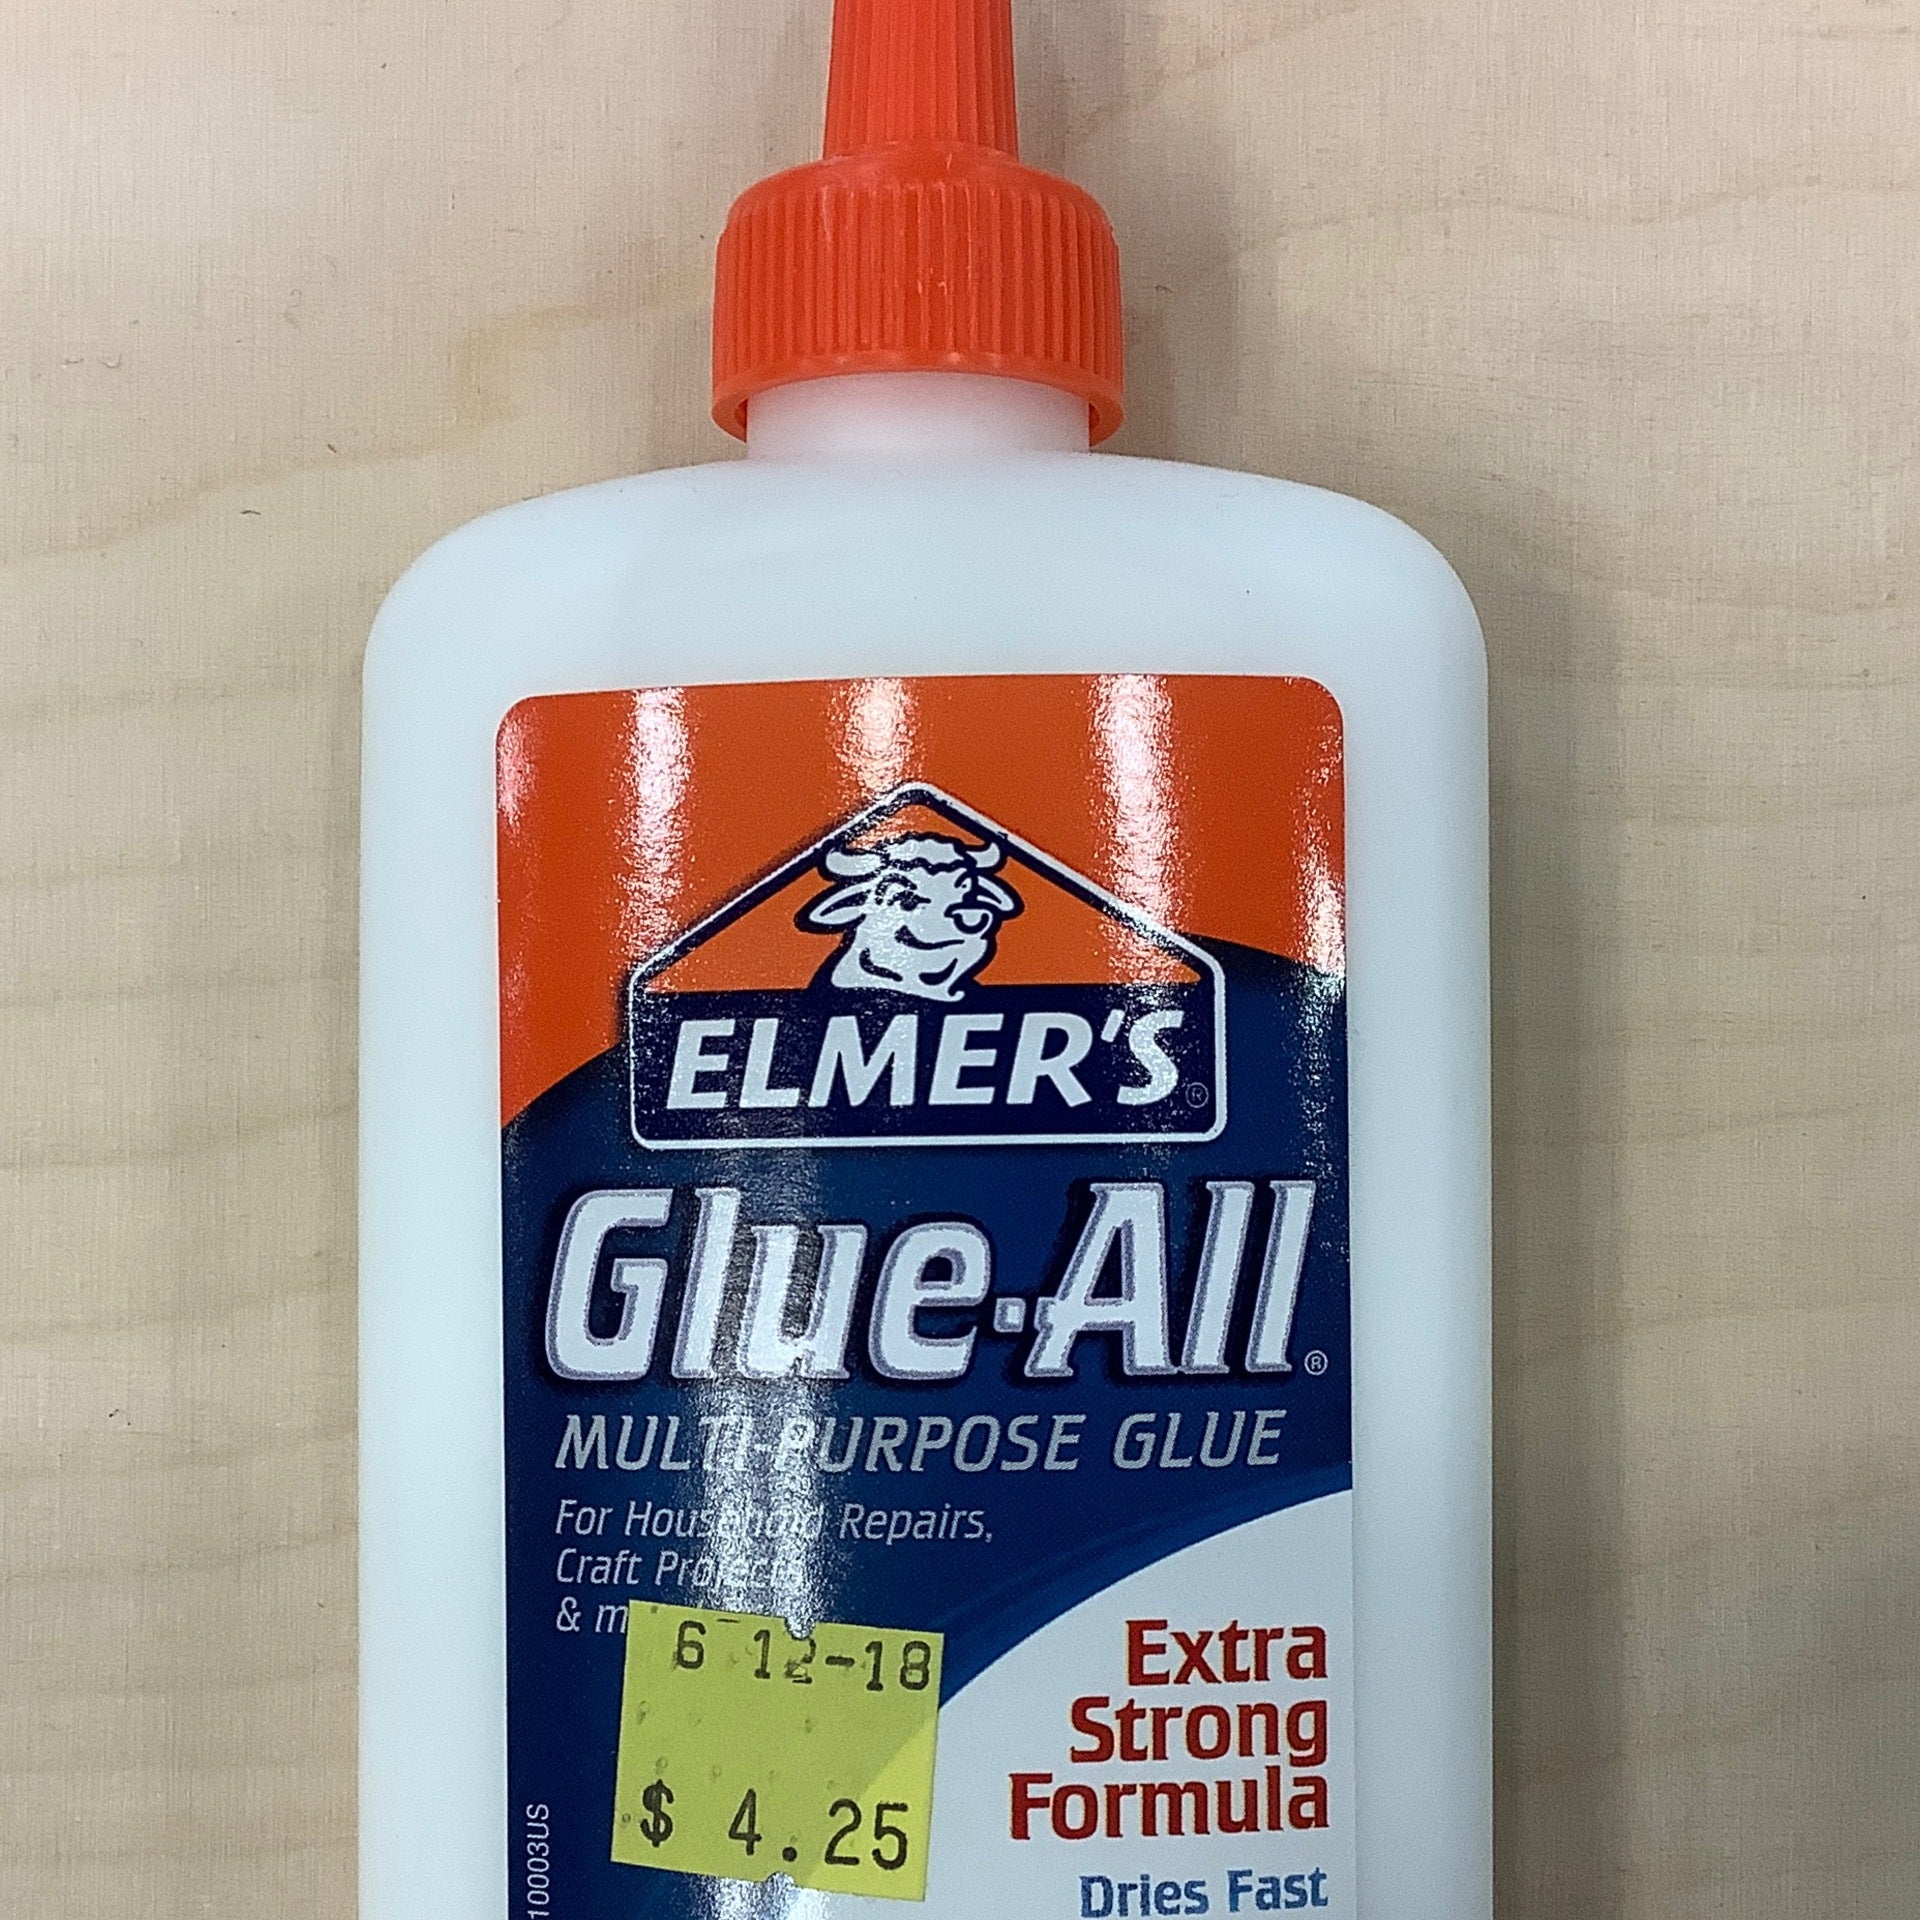 Elmer's Multi-Purpose Spray Adhesive, 4 Ounces